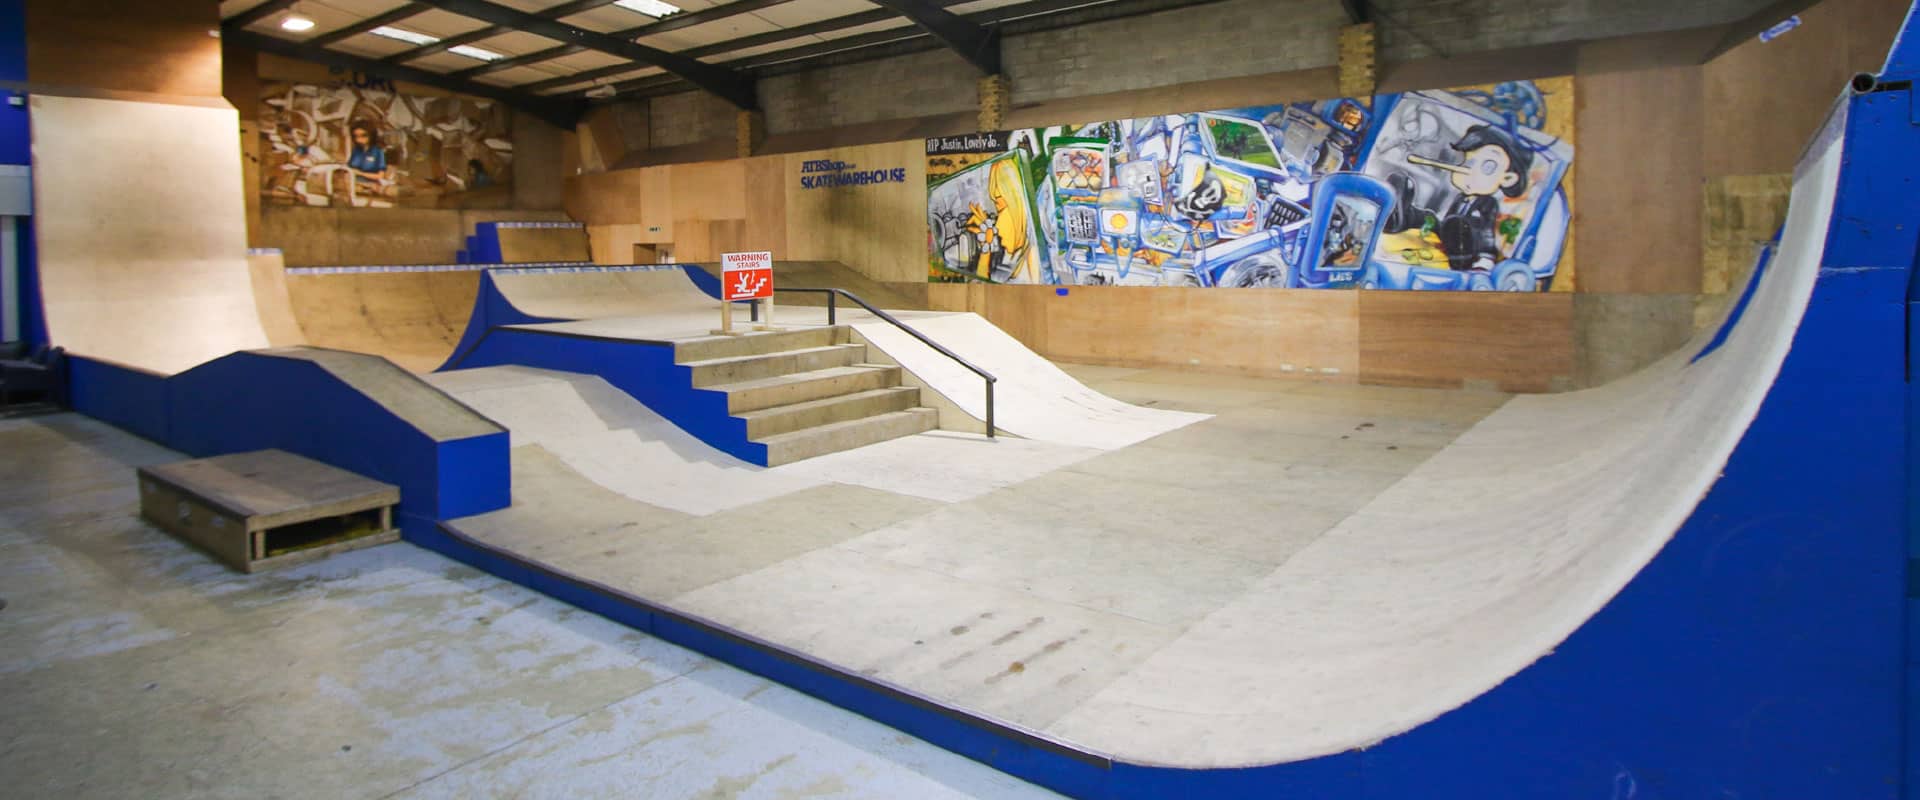 ATBShop Skate Warehouse and Skatepark in UK